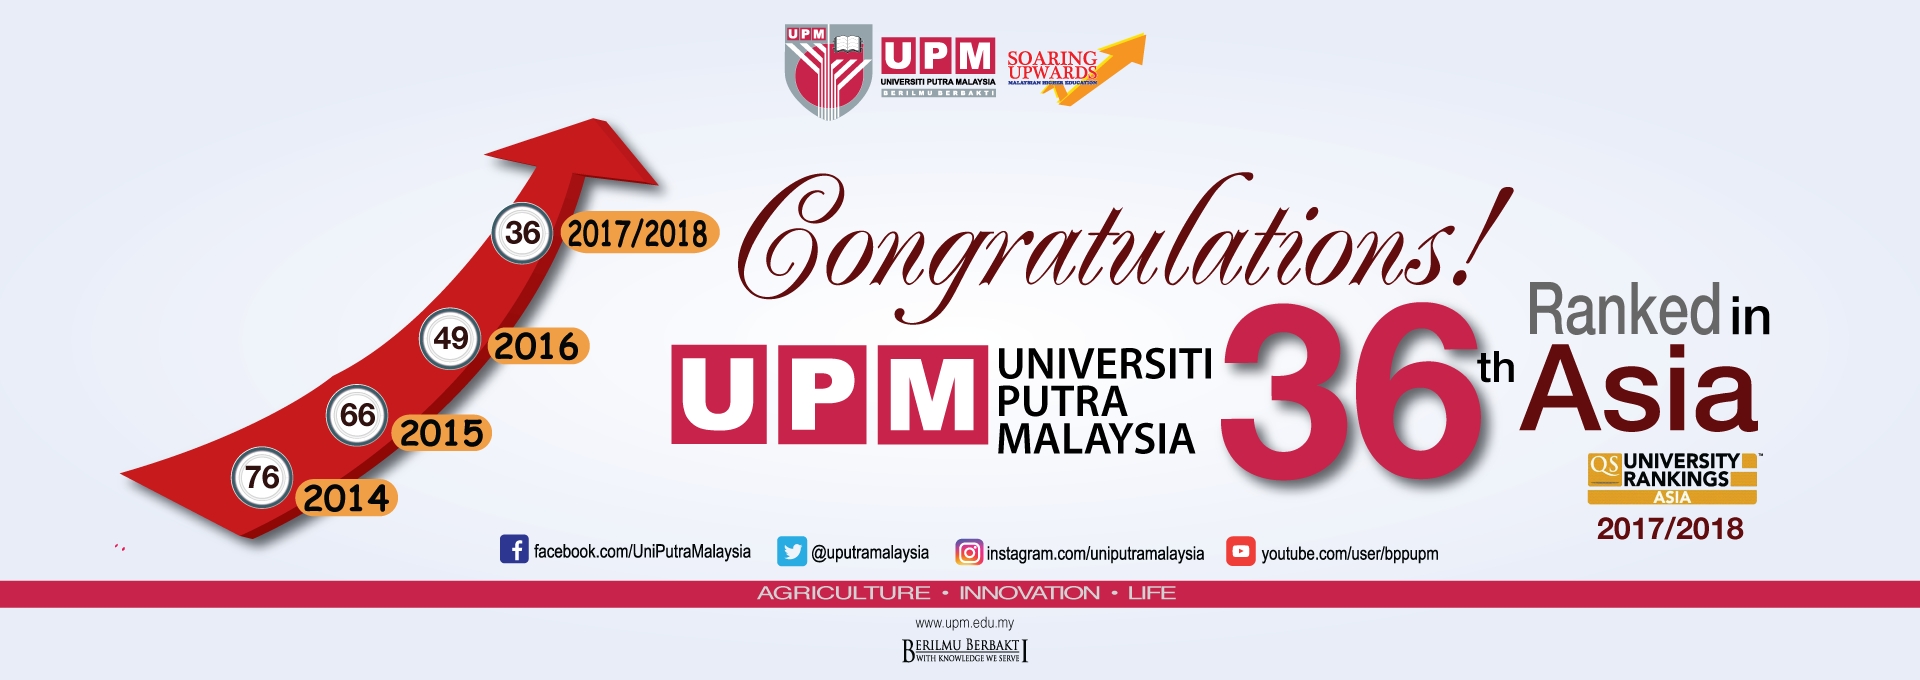 دانشگاه UPM